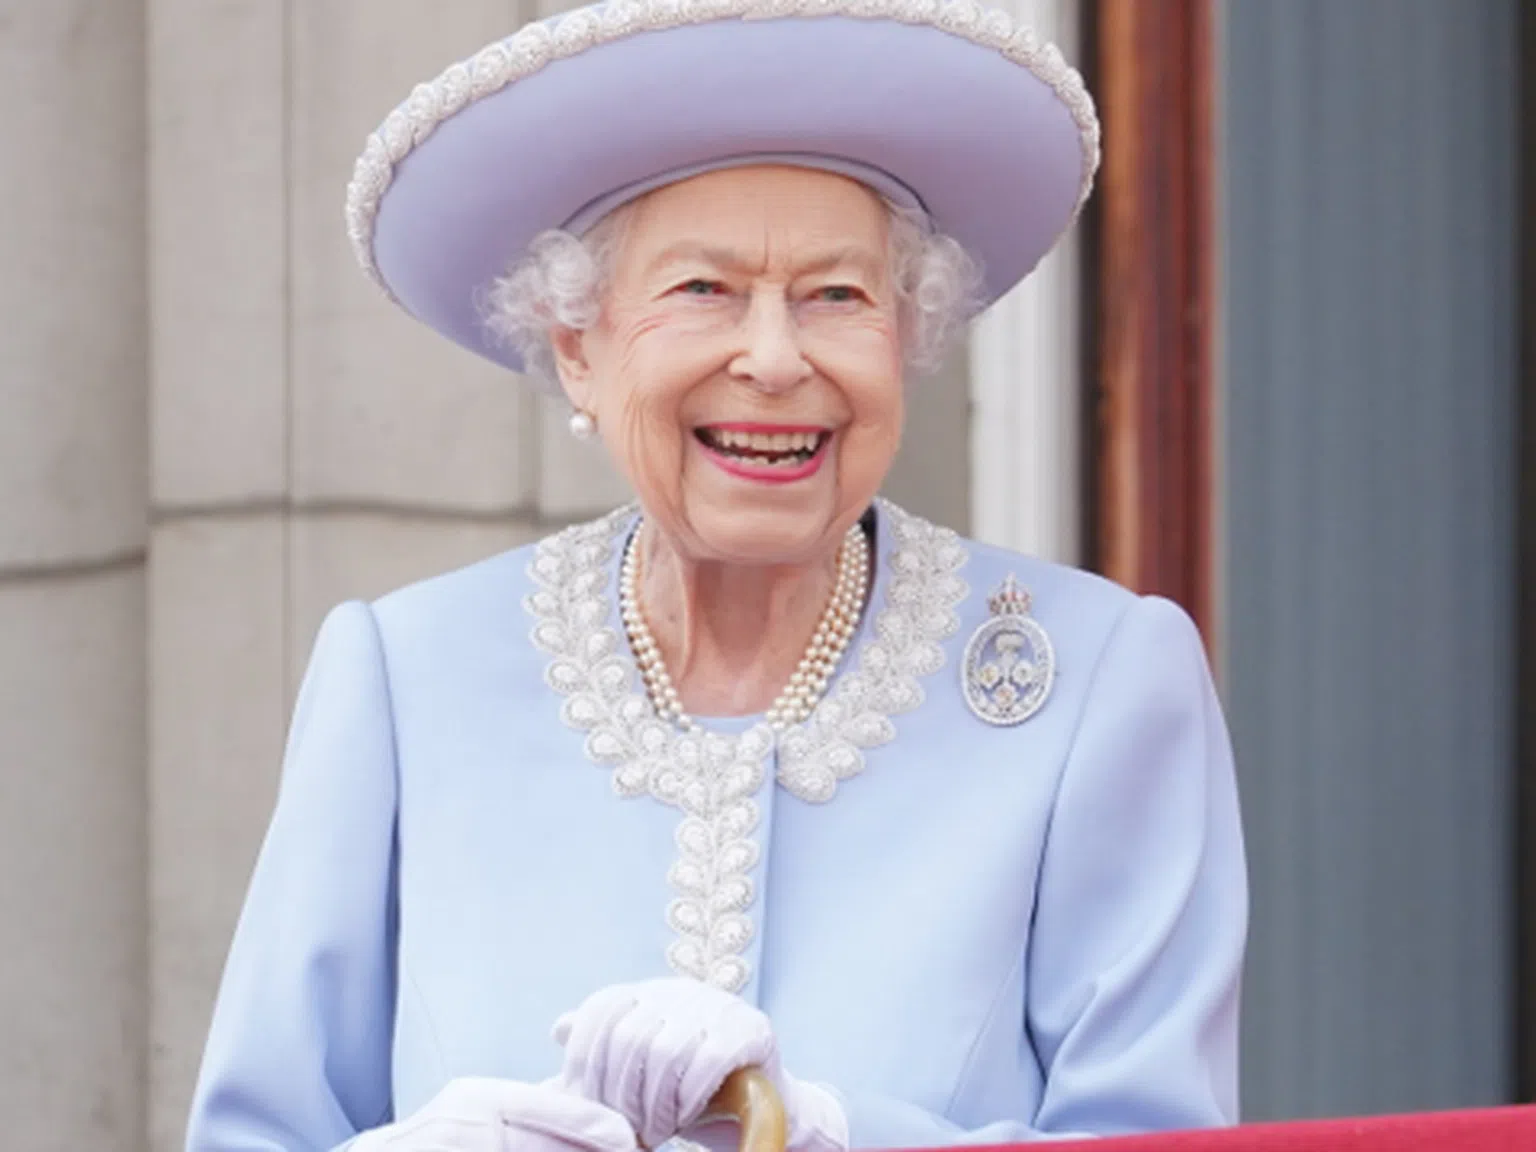 Щастлива и сияеща: Тържествата за юбилея на кралица Елизабет започнаха - а Меган и Хари излязоха ли на балкона? (снимки)